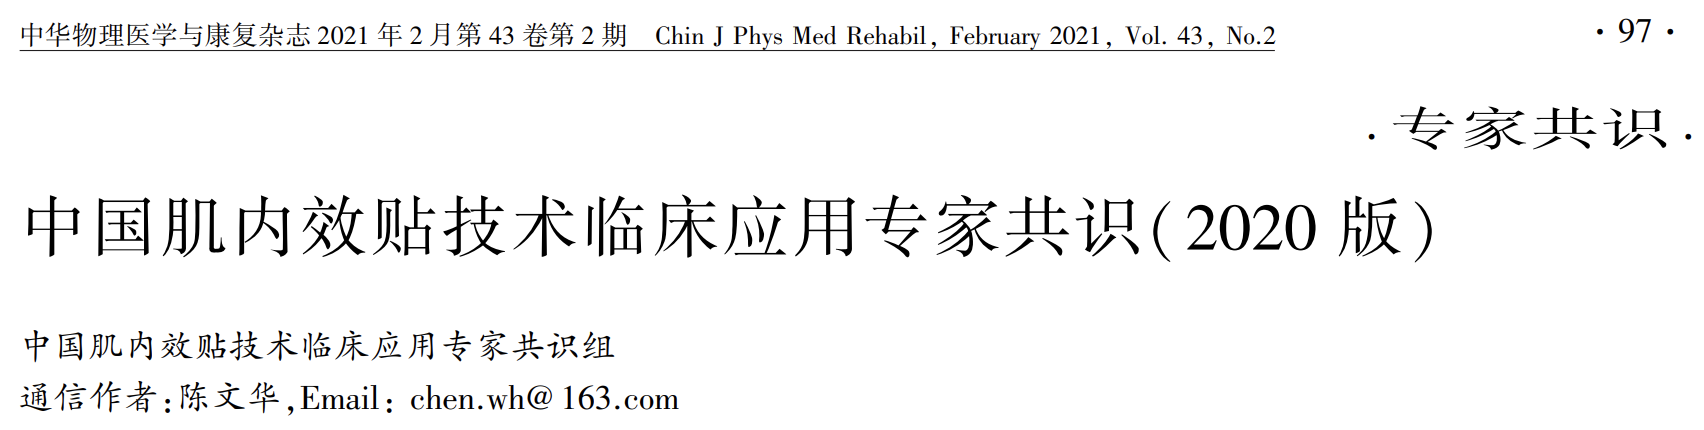 中国<font color="red">肌</font><font color="red">内</font><font color="red">效</font><font color="red">贴</font>技术临床应用专家共识（2020），一文get要点！